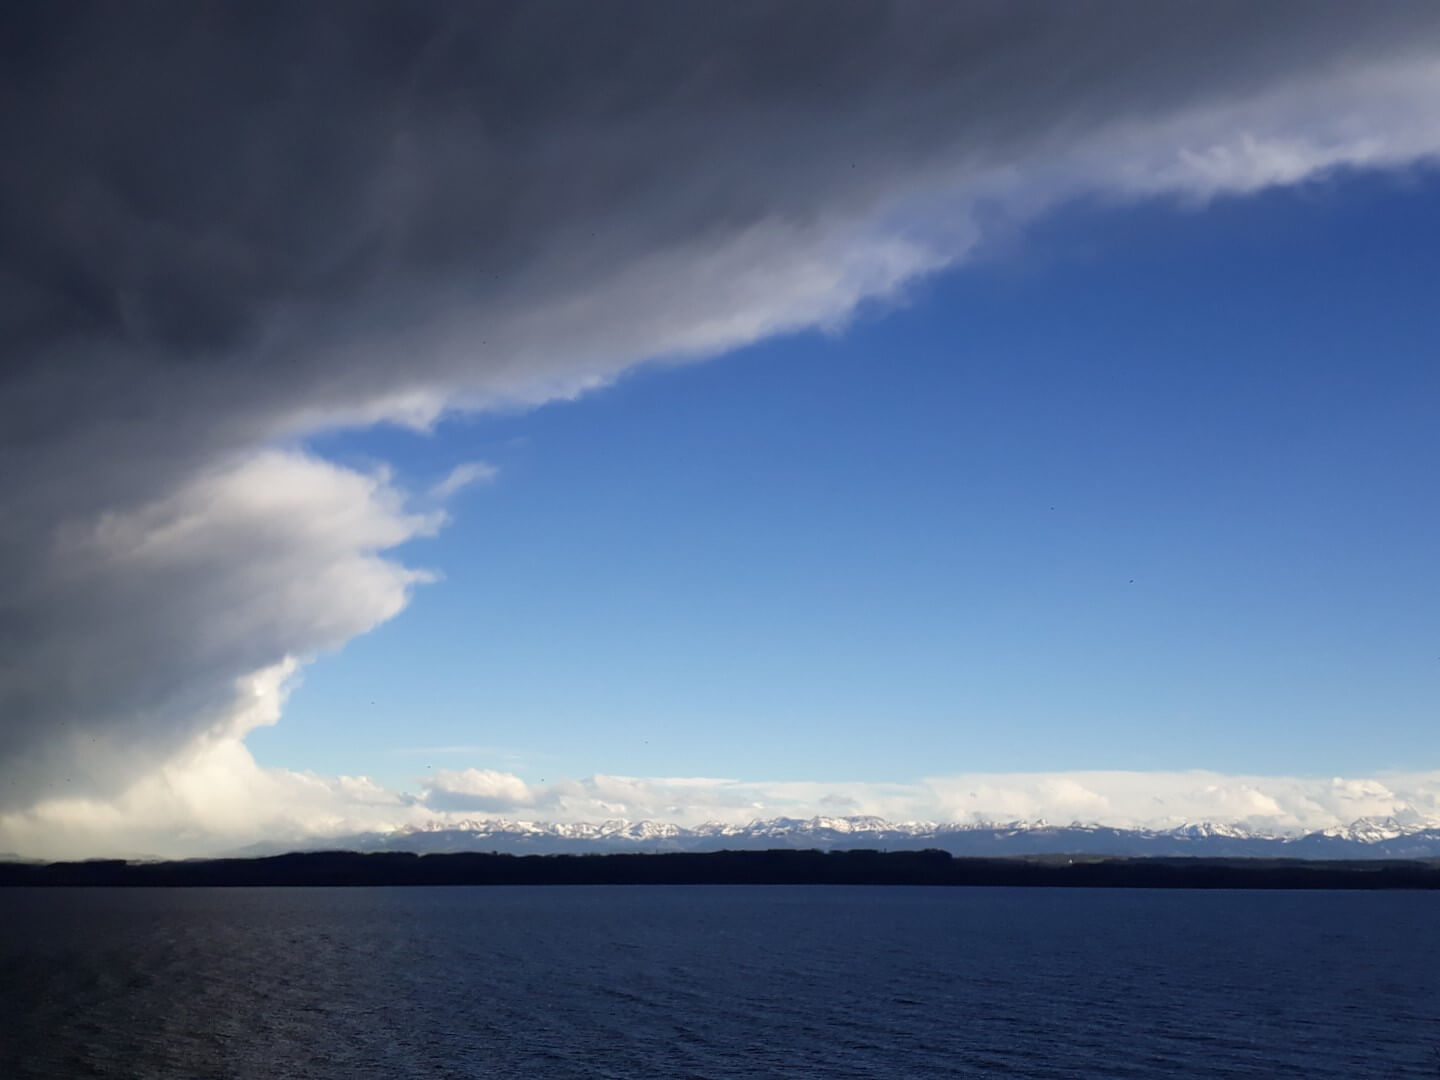 Vue sur le lac de Neuchâtel, nuages gris sur la gauche et ciel bleu sur la droite. Alpes enneigées dans le fond